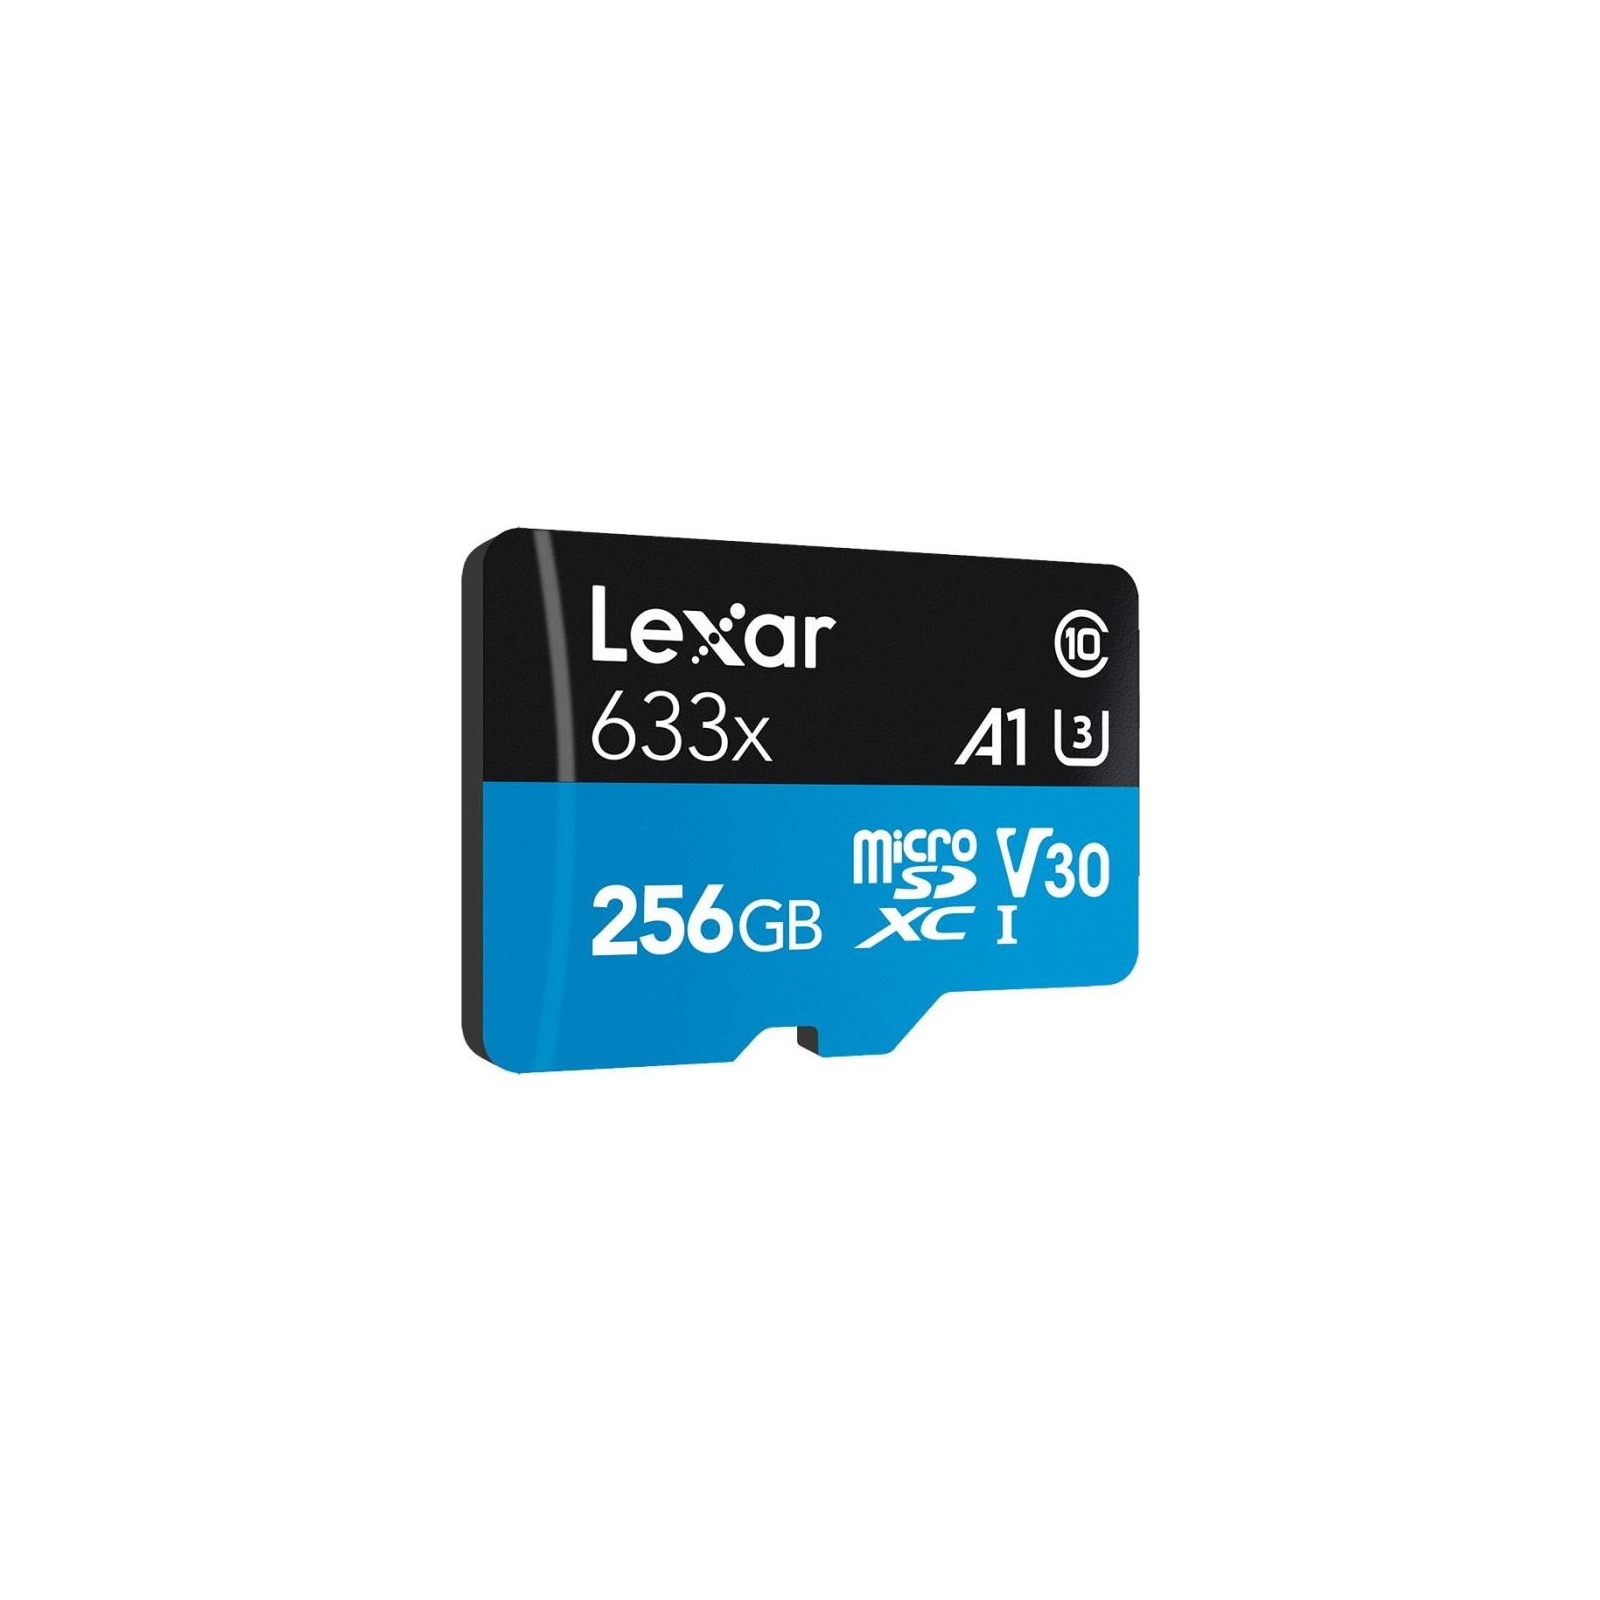 Карта памяти Lexar 256GB microSDXC class 10 UHS-I 633x (LSDMI256BB633A) изображение 2